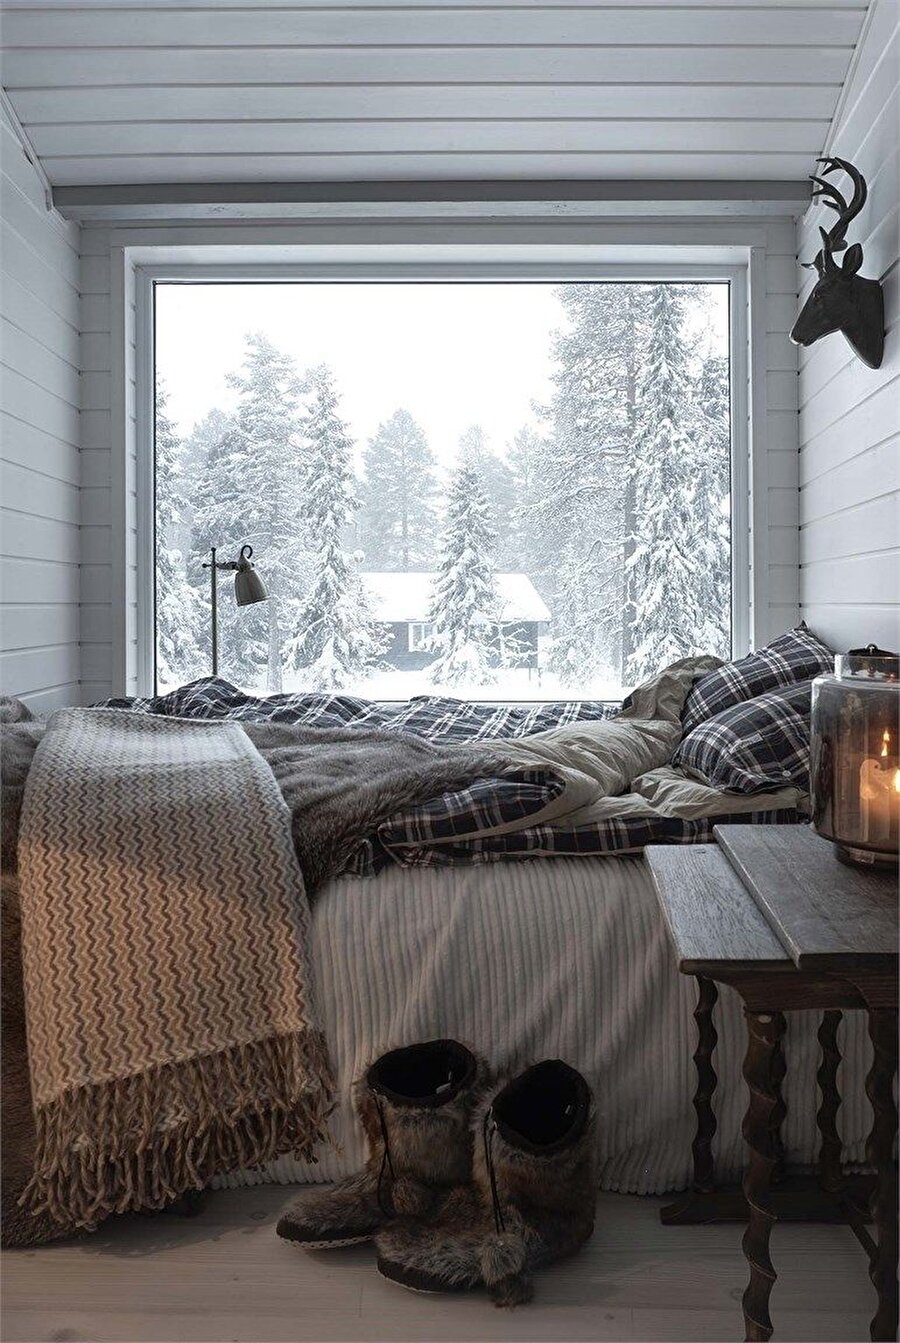 Уютная комната тепло. Уютная комната. Уютный зимний домик. Уютный зимний интерьер. Уютная комната зимой.